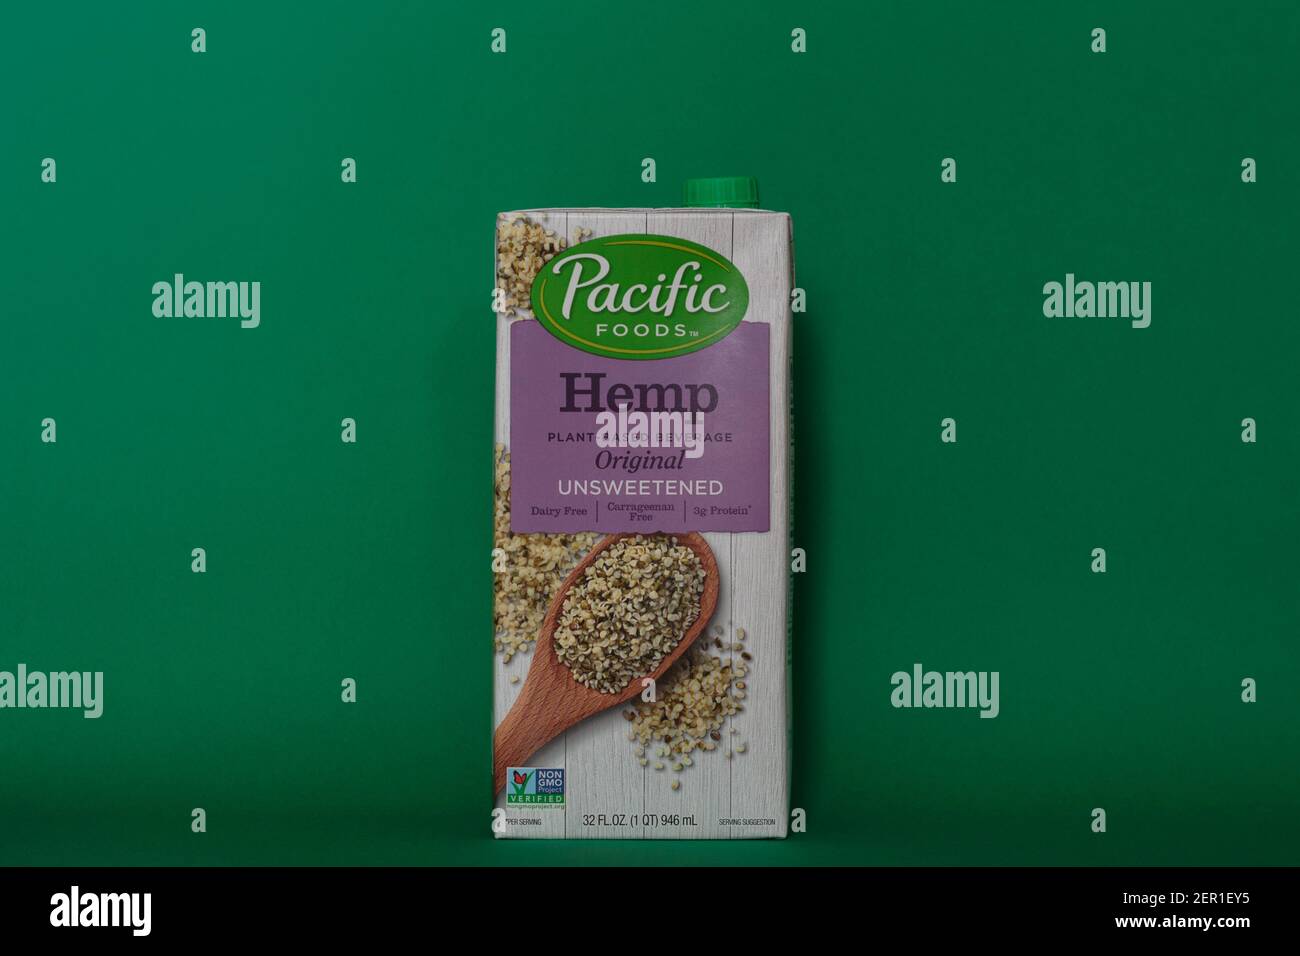 Illustrative Editorial der Marke Pacific Foods Hanf Milch pflanzliches Getränk, original ungesüßt, vegan, milchfrei, nicht-GVO-Milchersatz Stockfoto